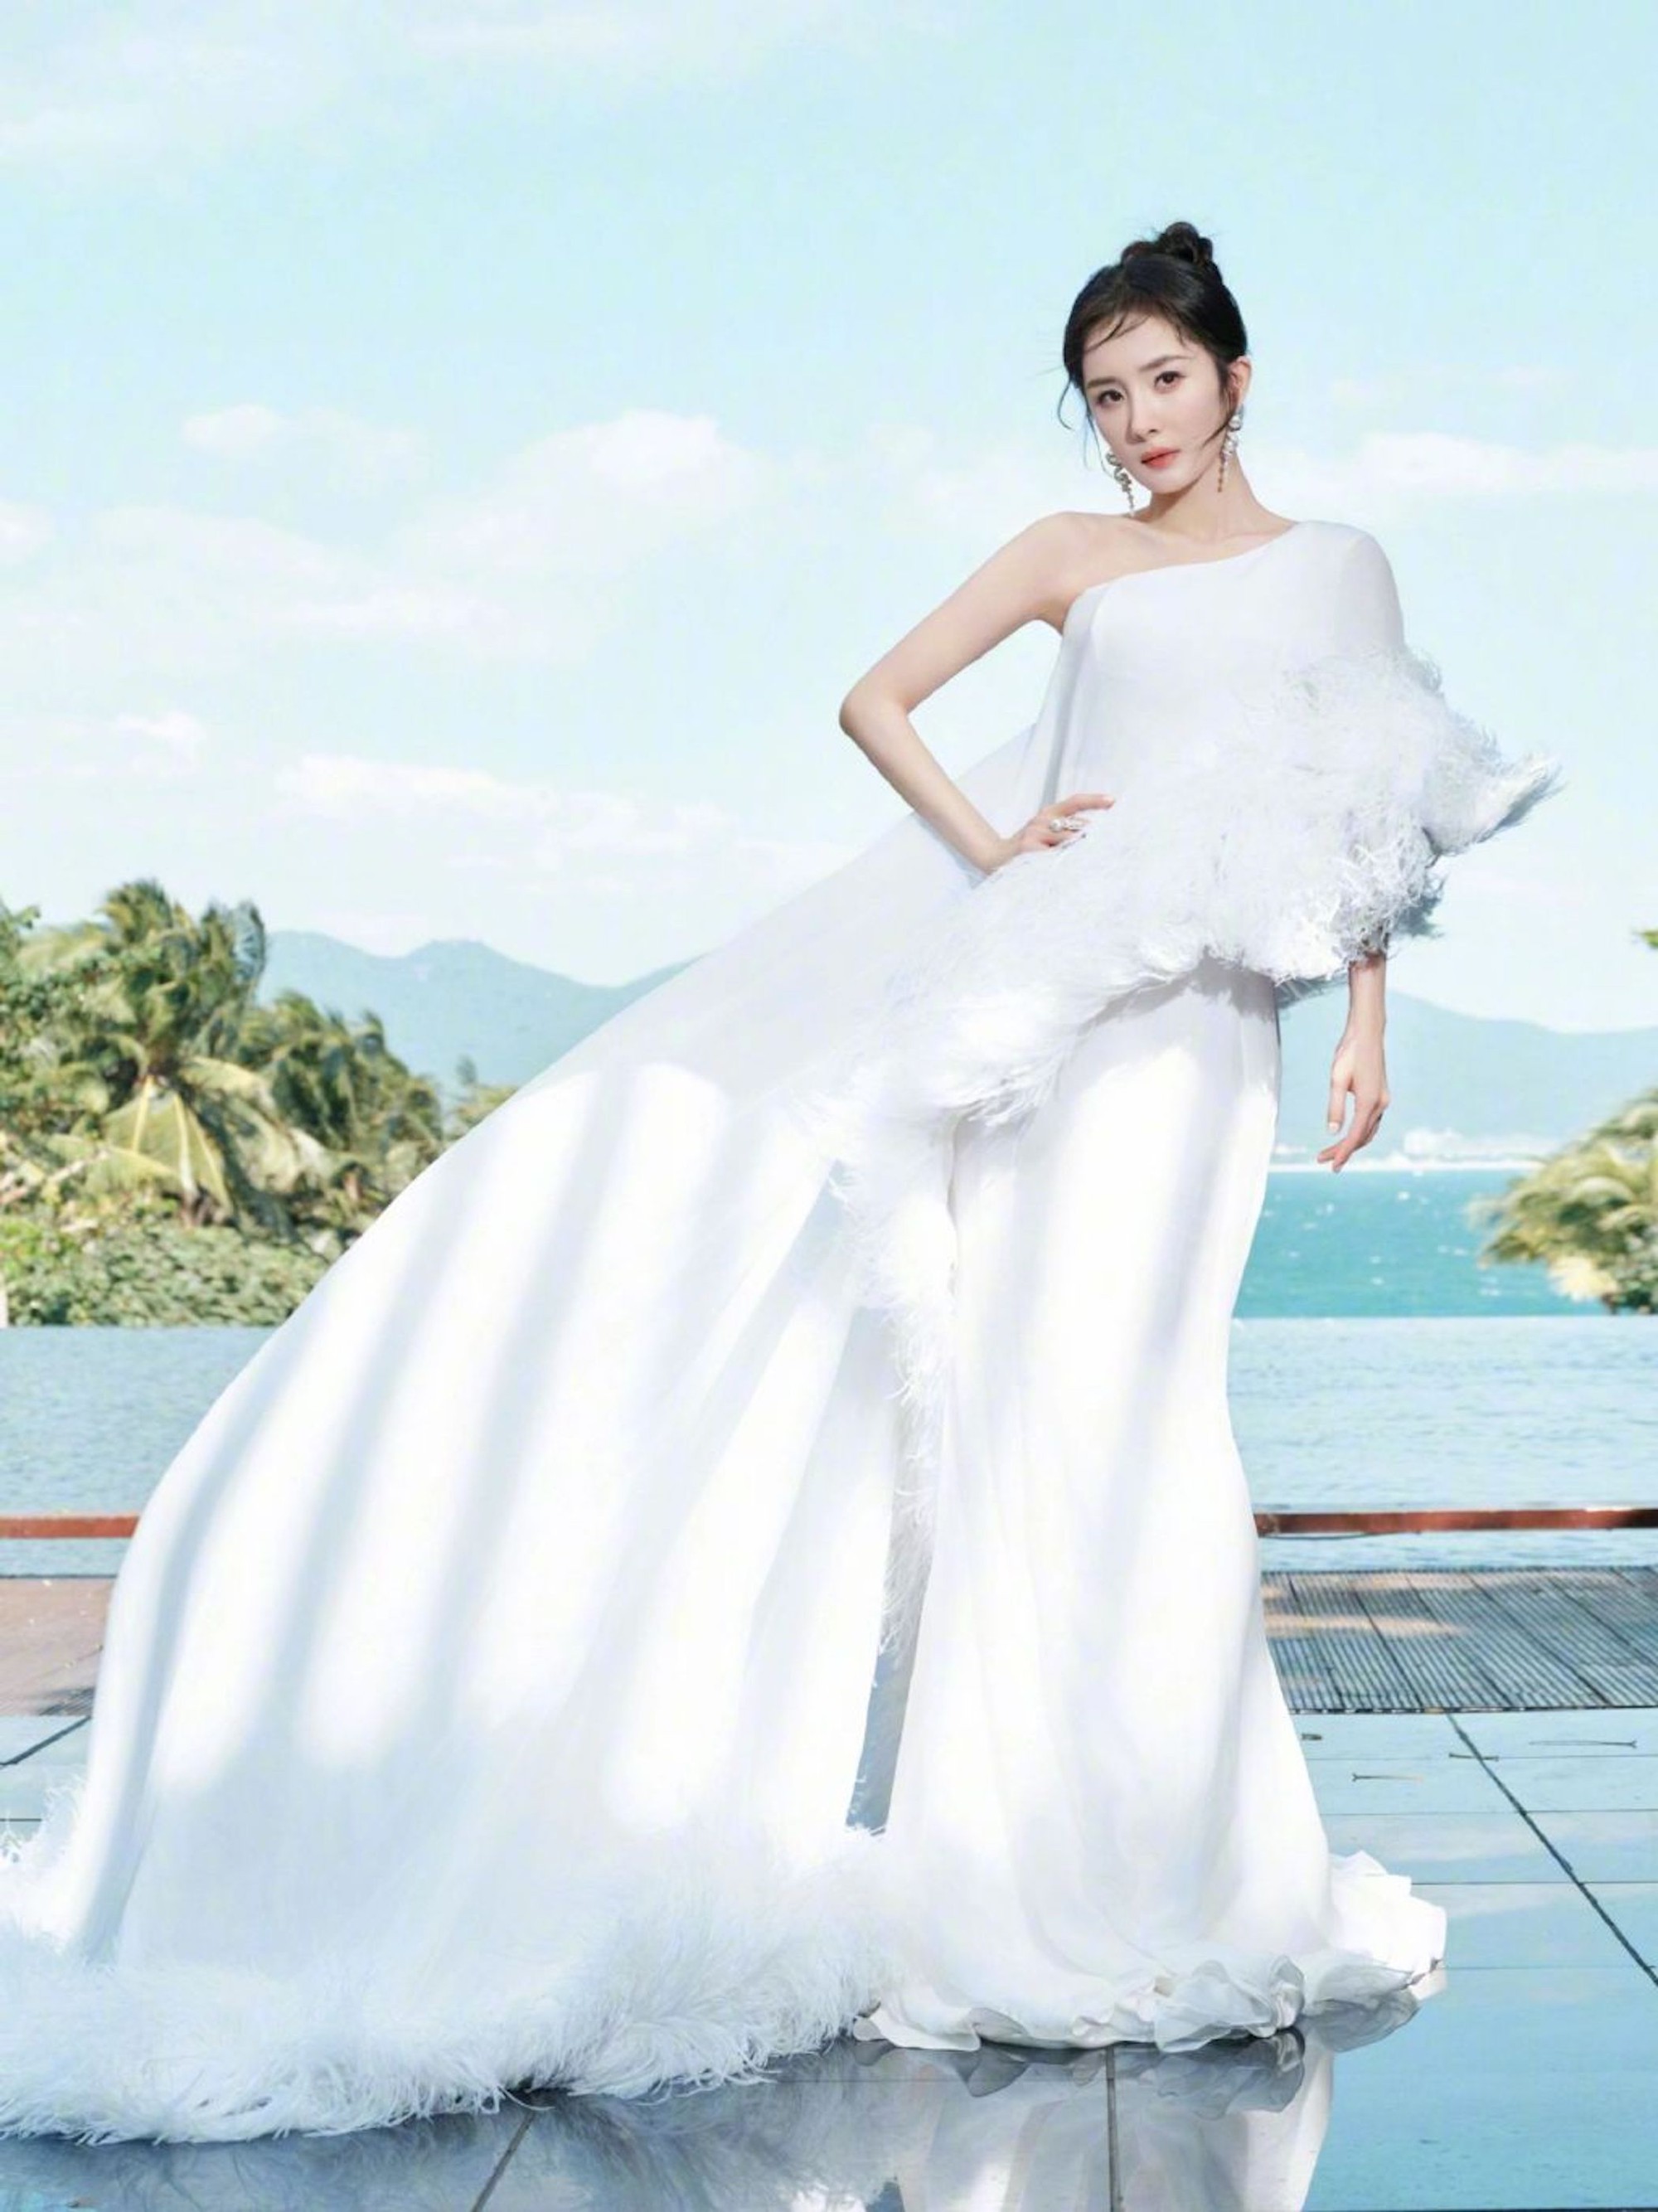 Trương Gia Nghê mặc váy công chúa 'át vía' Dương Mịch trên thảm đỏ